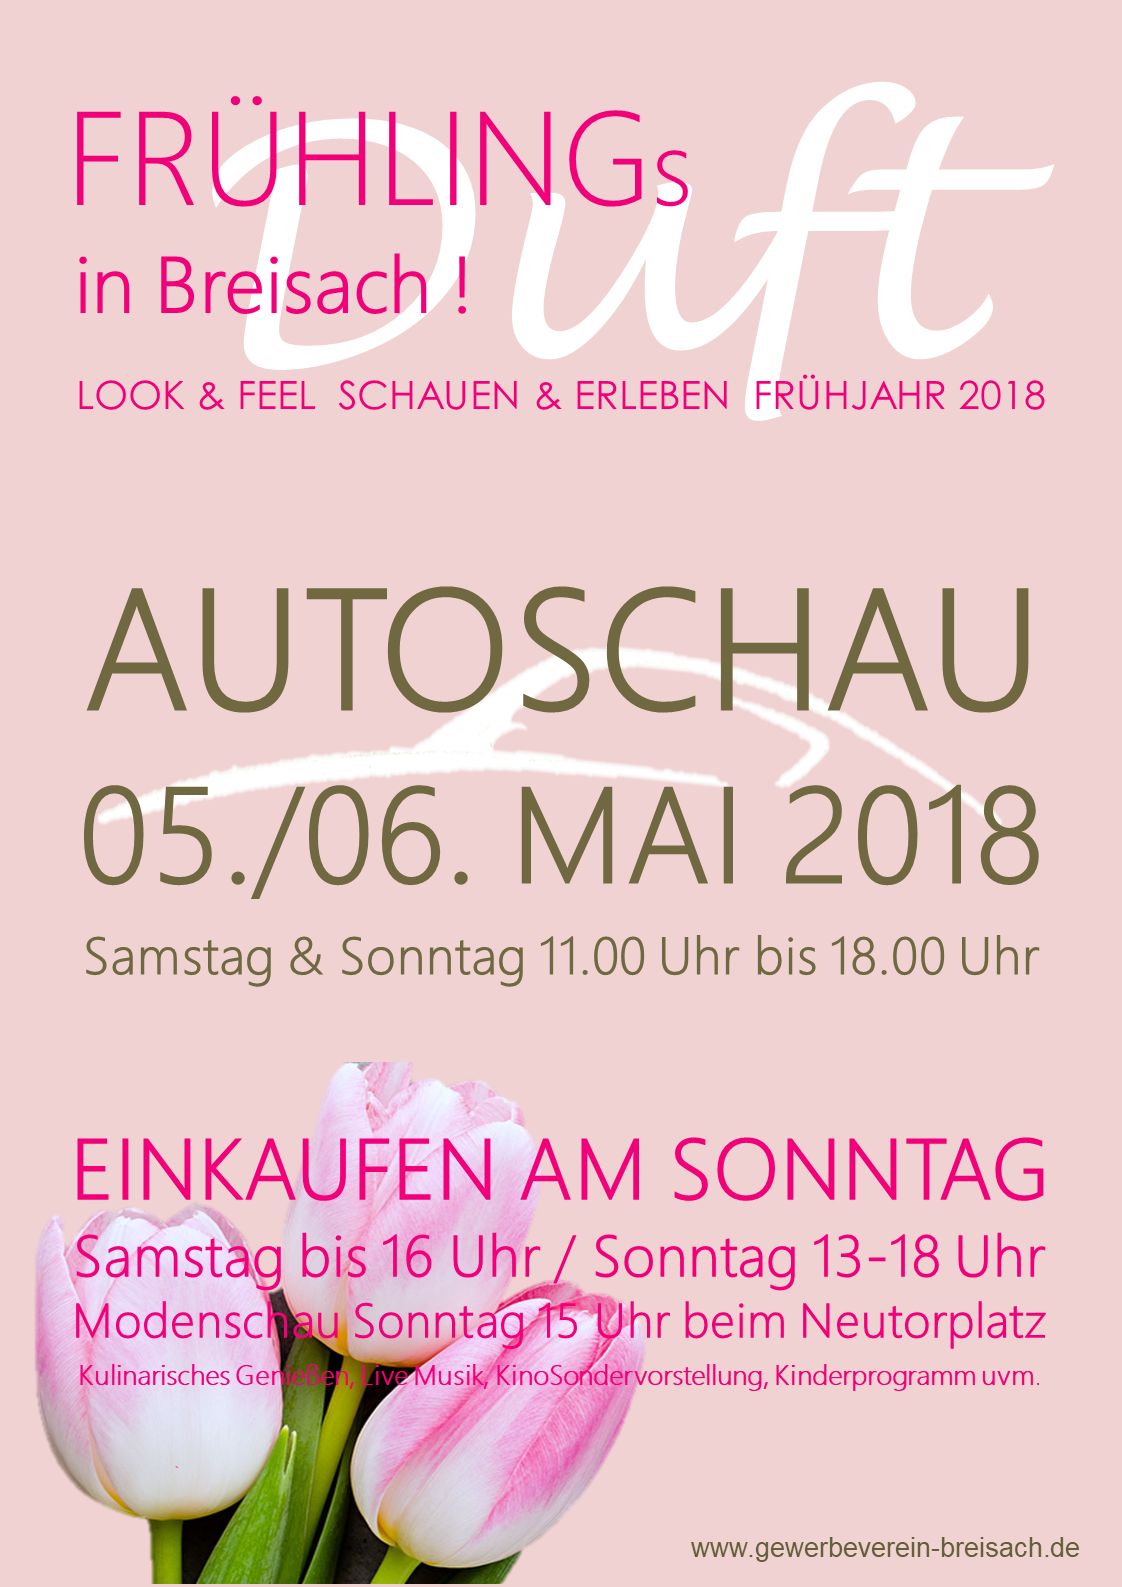 Frühlingsduft in Breisach am Rhein… Breisacher Autoschau und Verkaufsoffener Sonntag am 05.+06. Mai 18